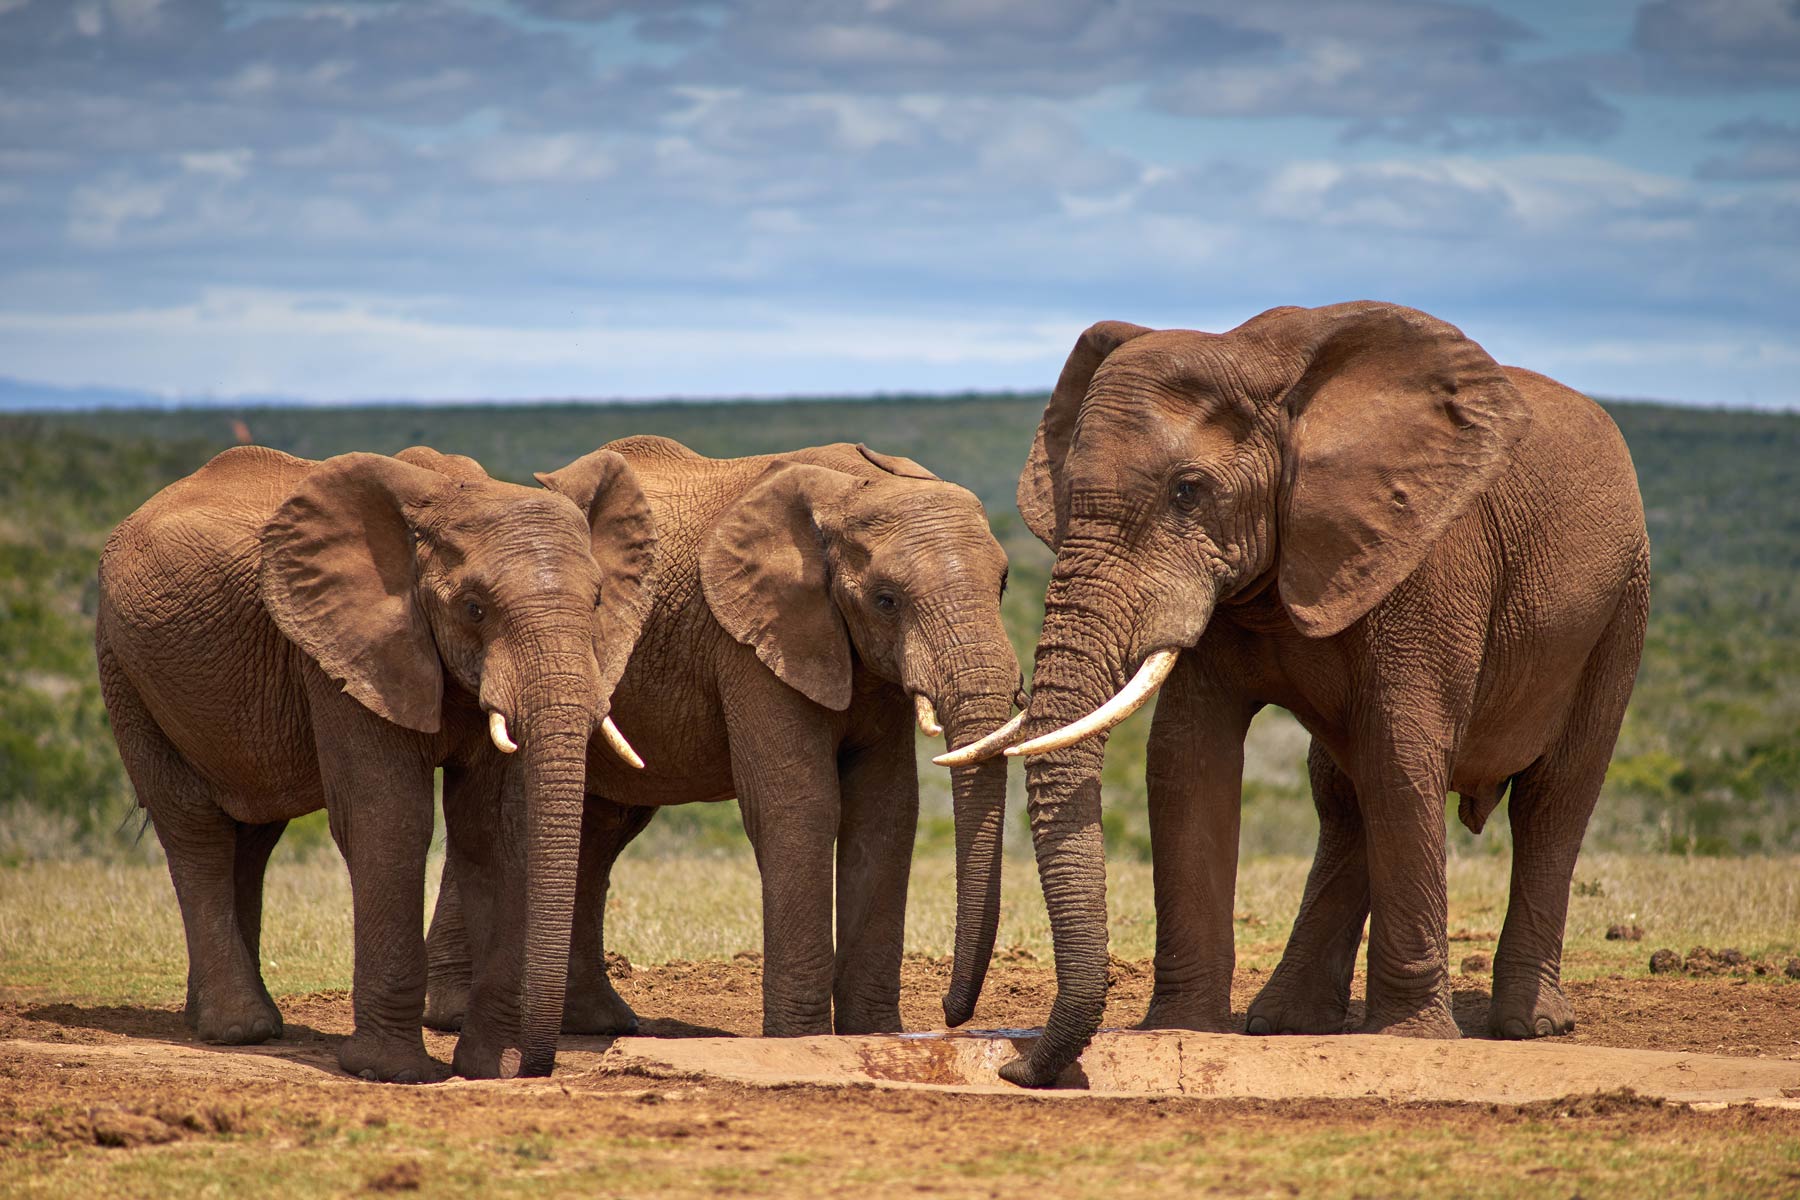 Elephants make a comeback in Chad’s Zakouma Park